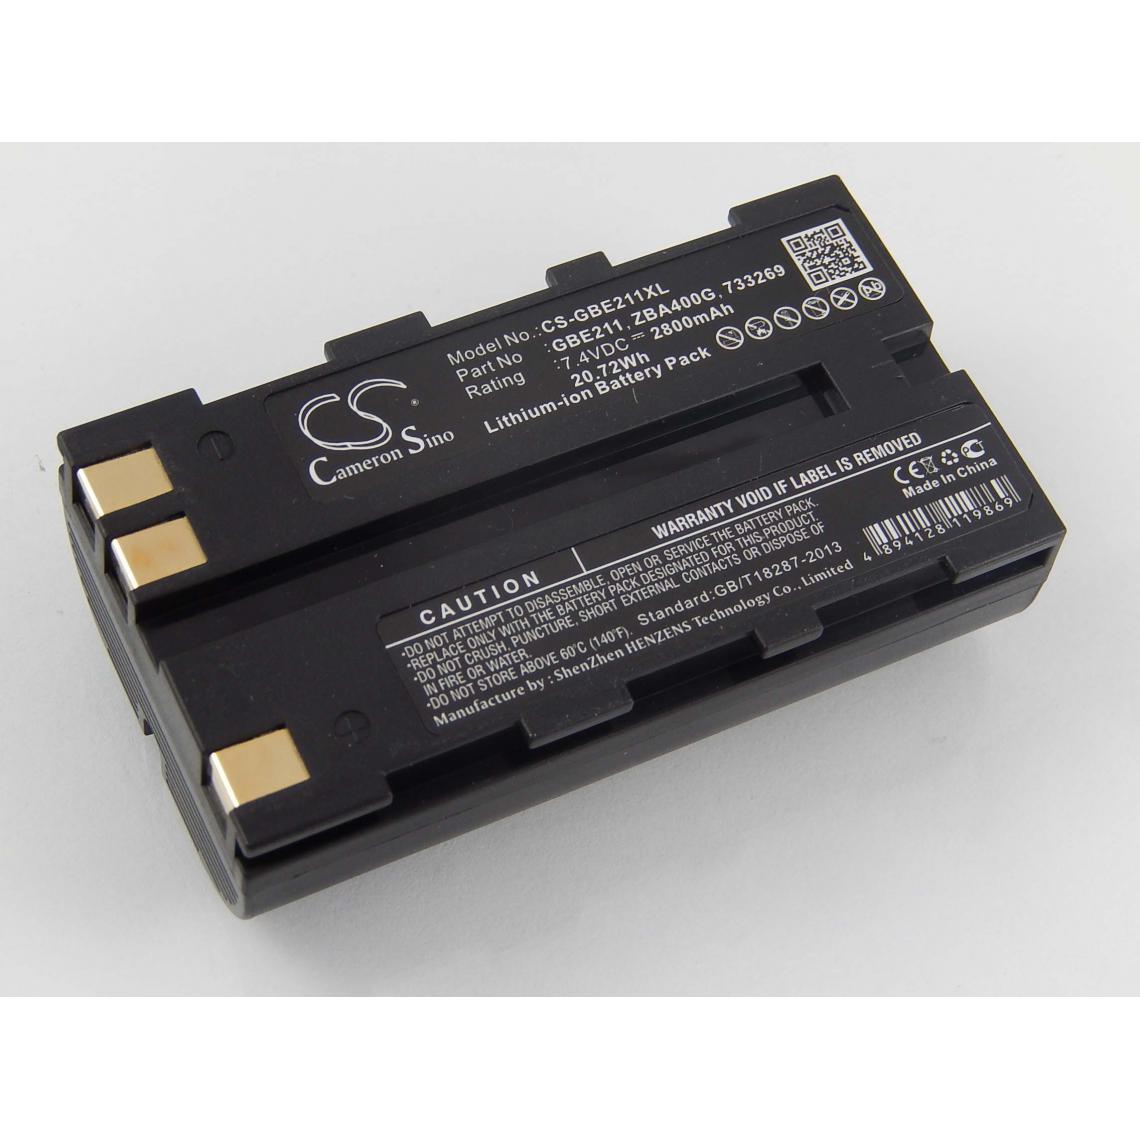 Vhbw - vhbw Batterie compatible avec Leica TCR407, TCR407 Power dispositif de mesure laser, outil de mesure (2800mAh, 7,4V, Li-ion) - Piles rechargeables